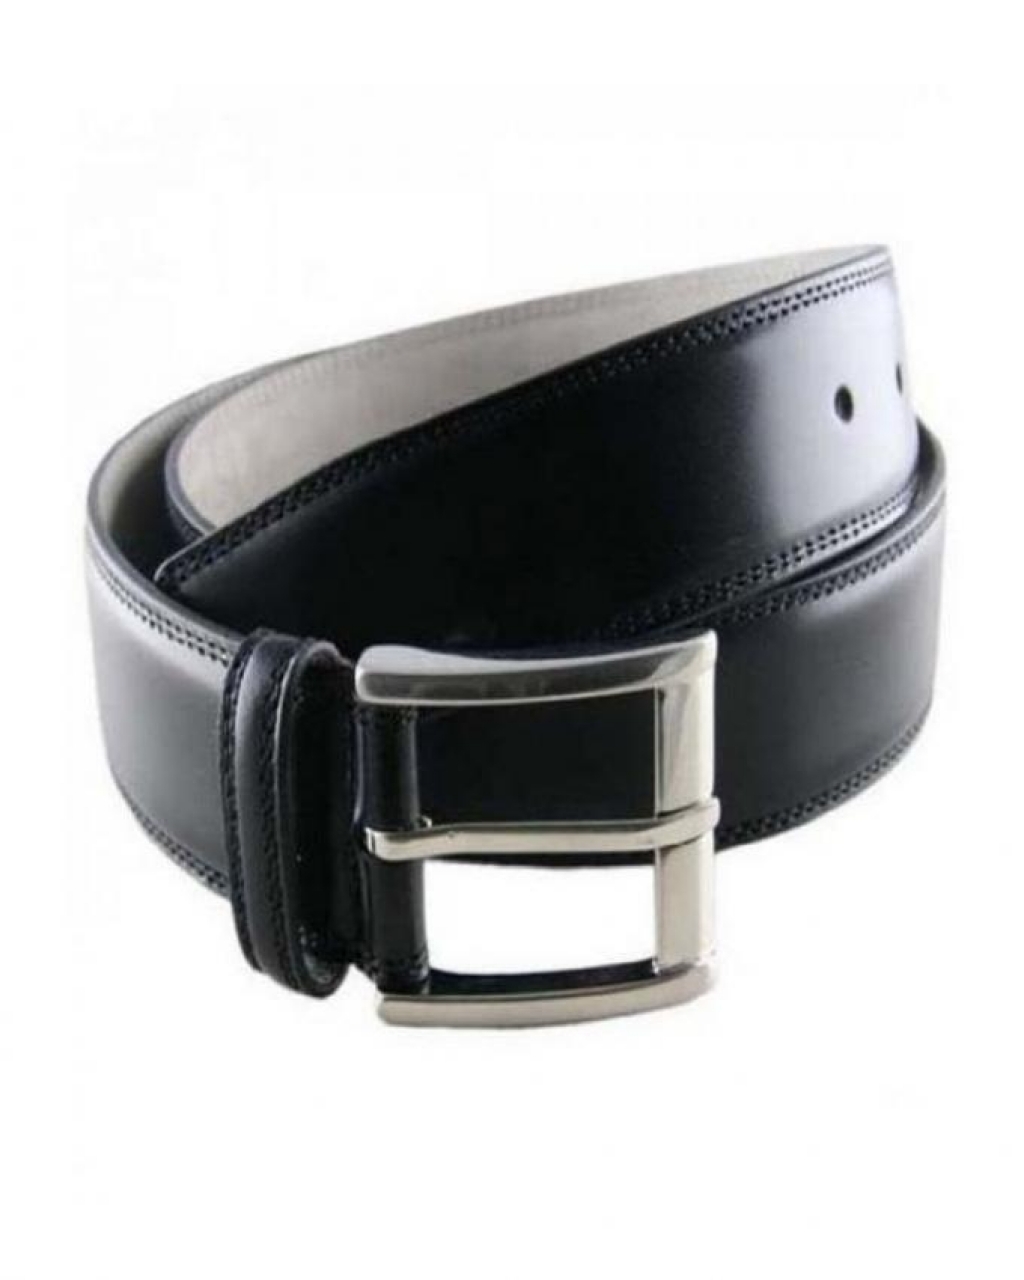 Buy Black Leather Belt For Men in Pakistan | Affordable.pk